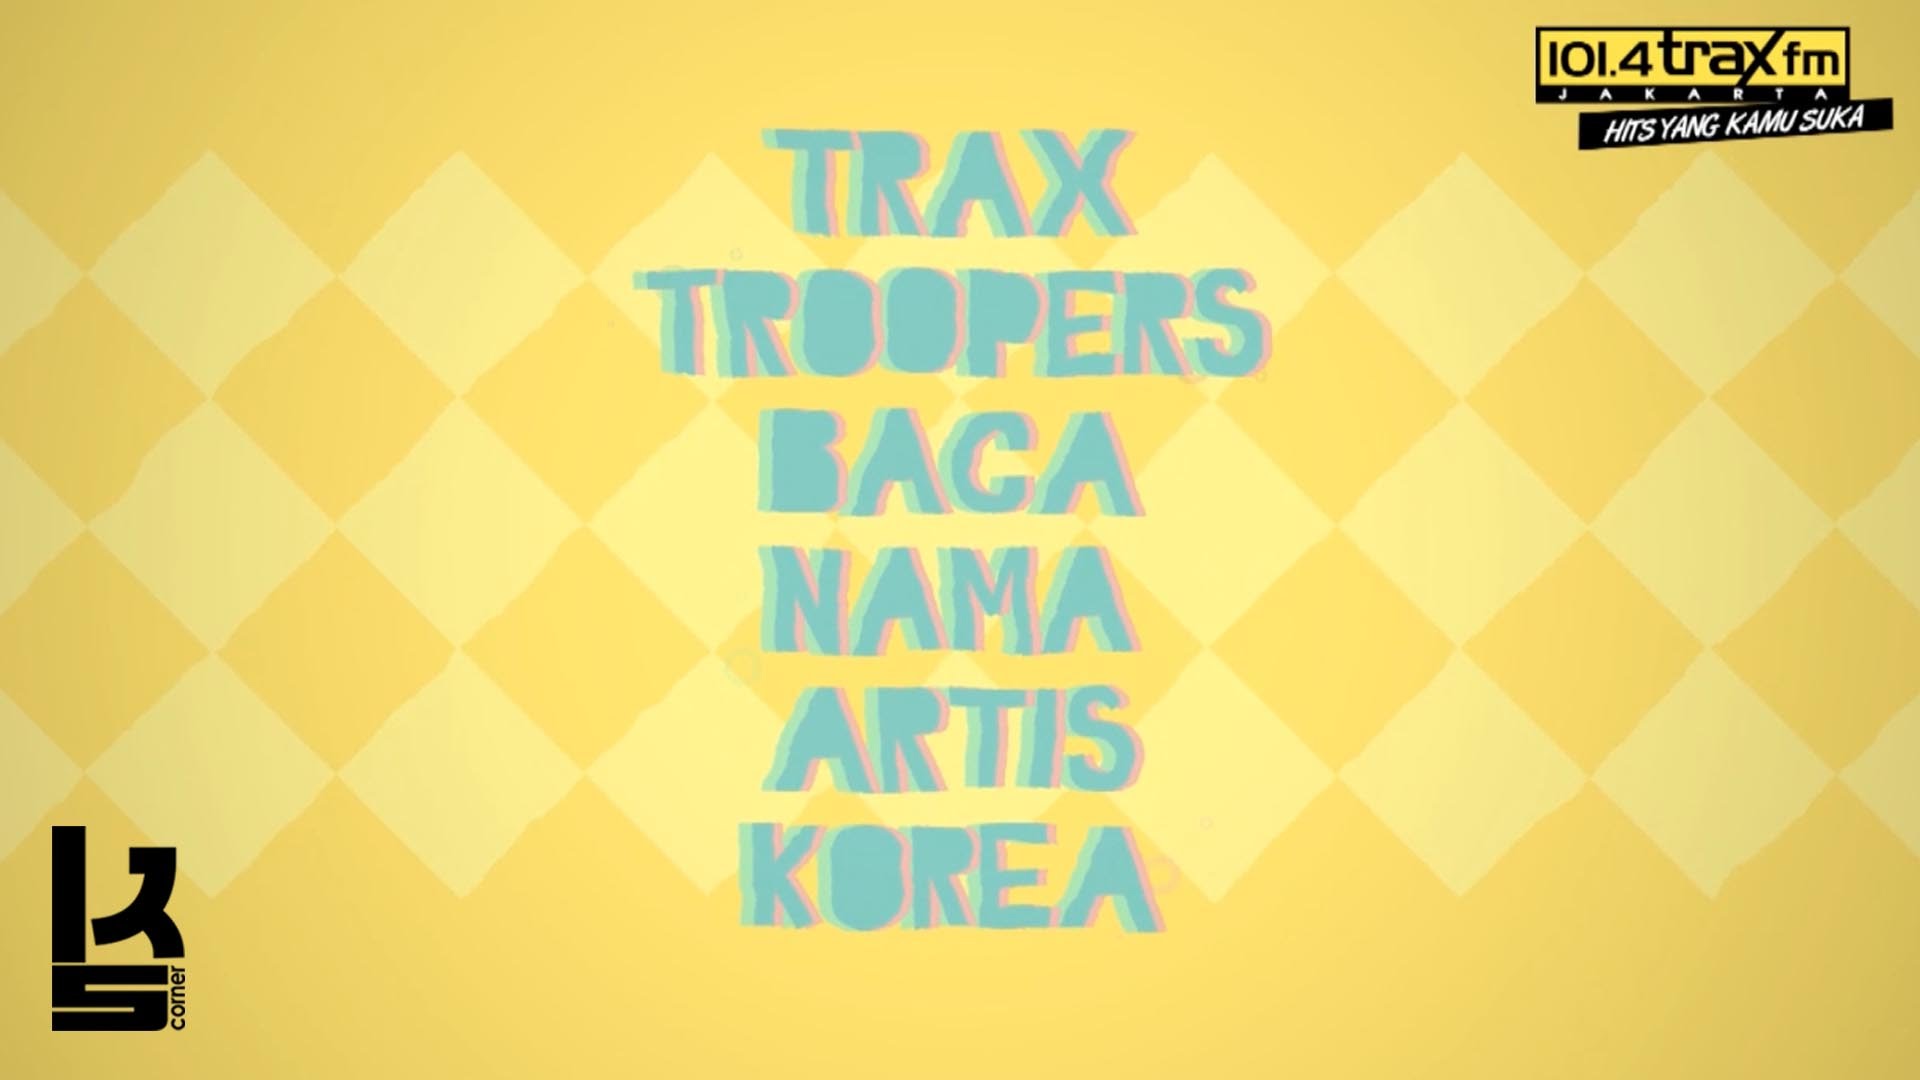 K’s Corner – tantangan membaca nama artis Korea untuk Trax Troopers